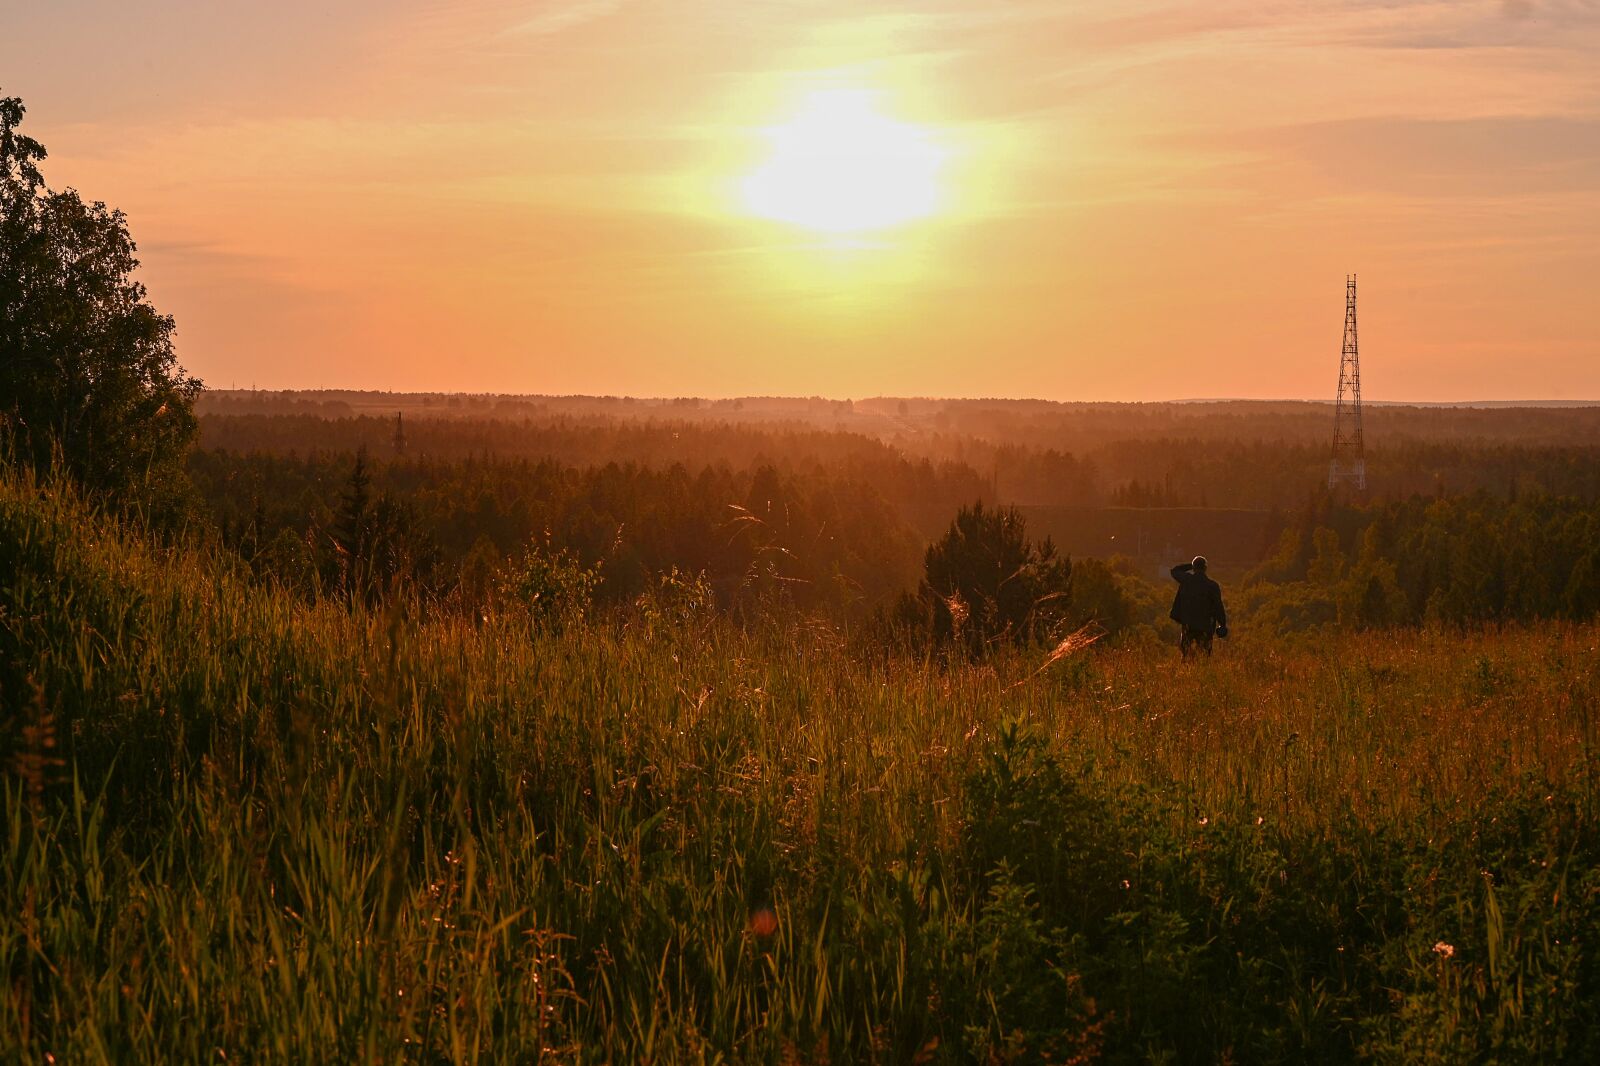 Nikon Nikkor Z 24-70mm F4 S sample photo. Sunset, summer, landscape photography